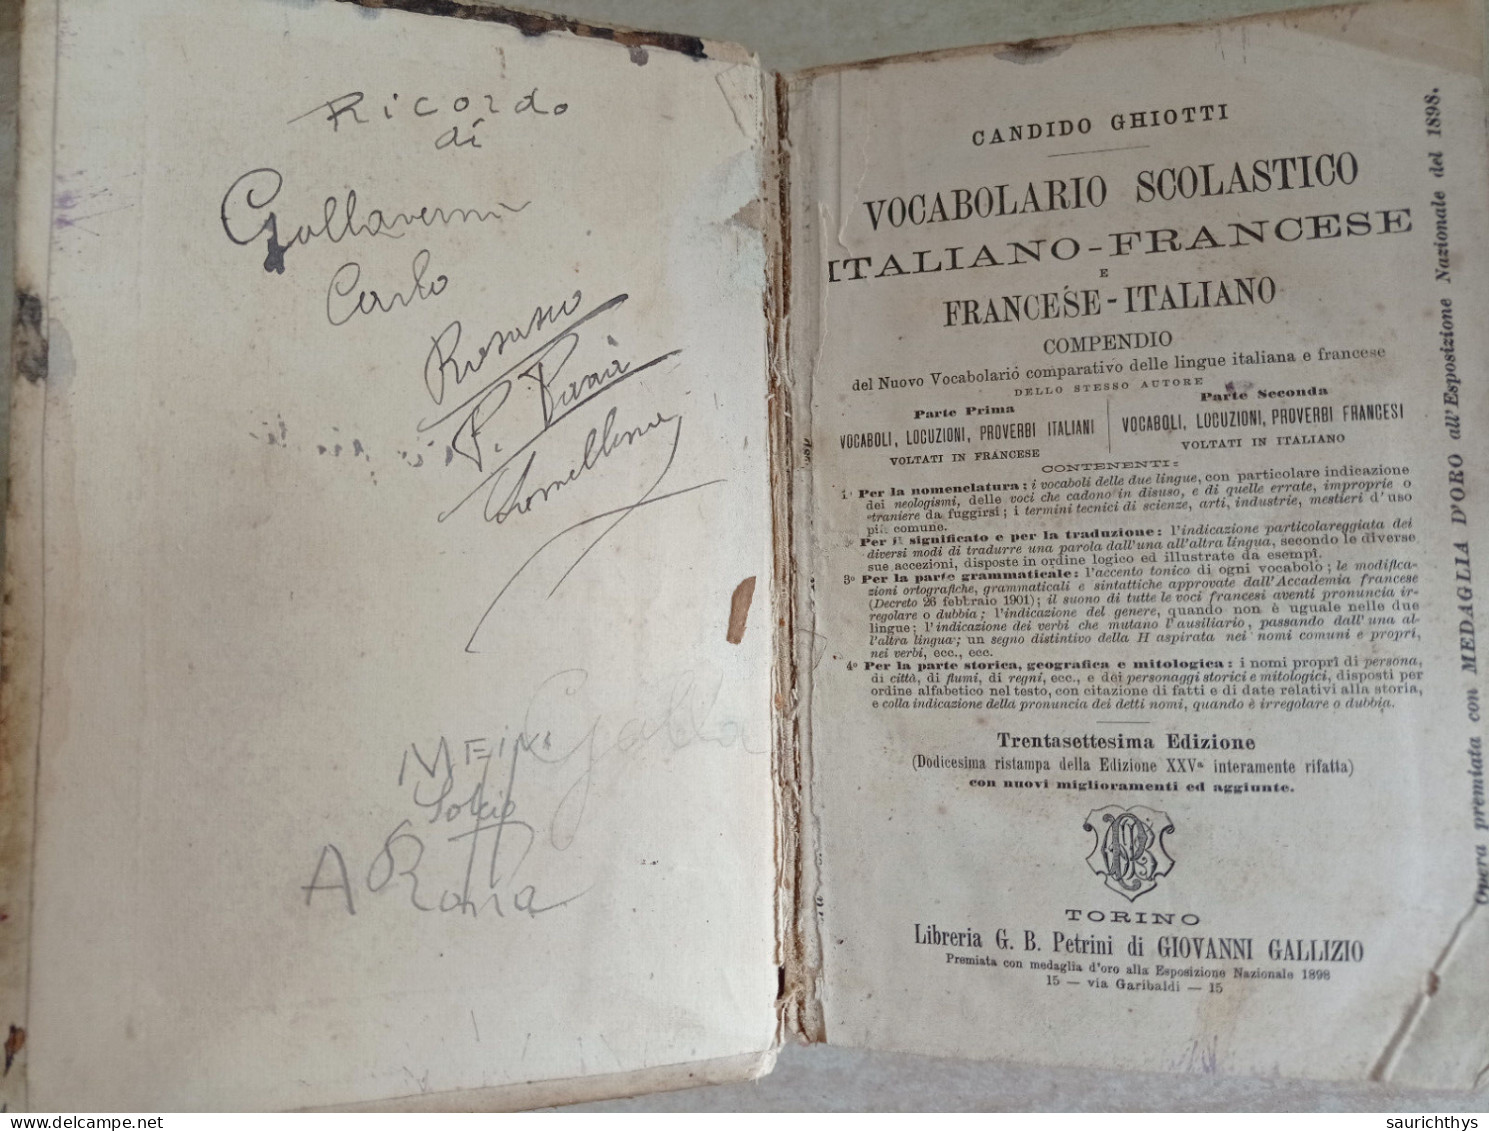 Candido Ghiotti Vocabolario Scolastico Italiano Francese Libreria Petrini Di Giovanni Gallizio Torino 1890 - Oude Boeken